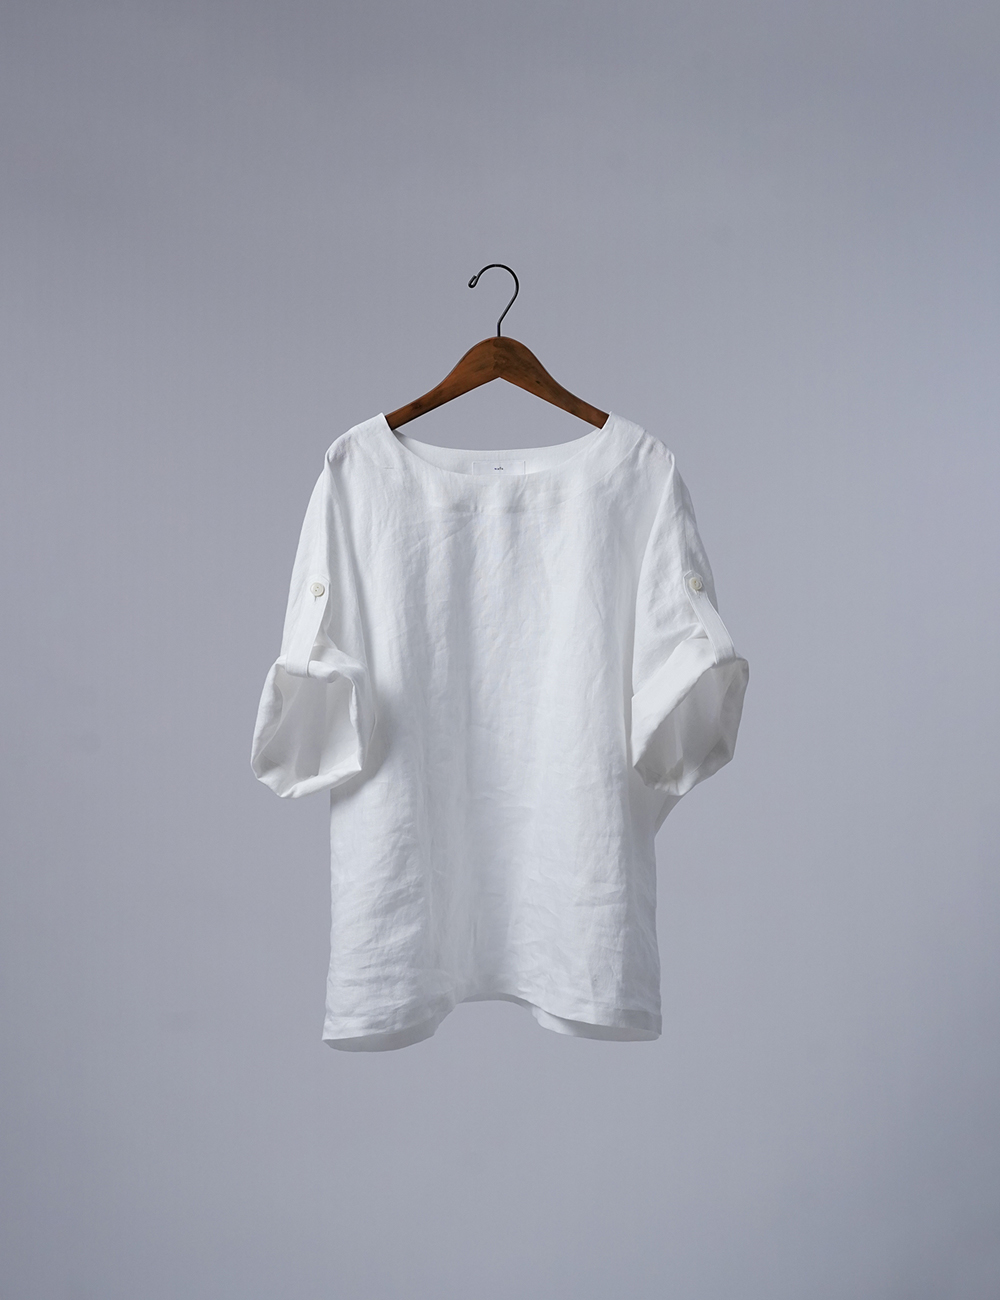 【リネントップス】風が通る ロールアップTシャツ / 白色 t041k-wht1